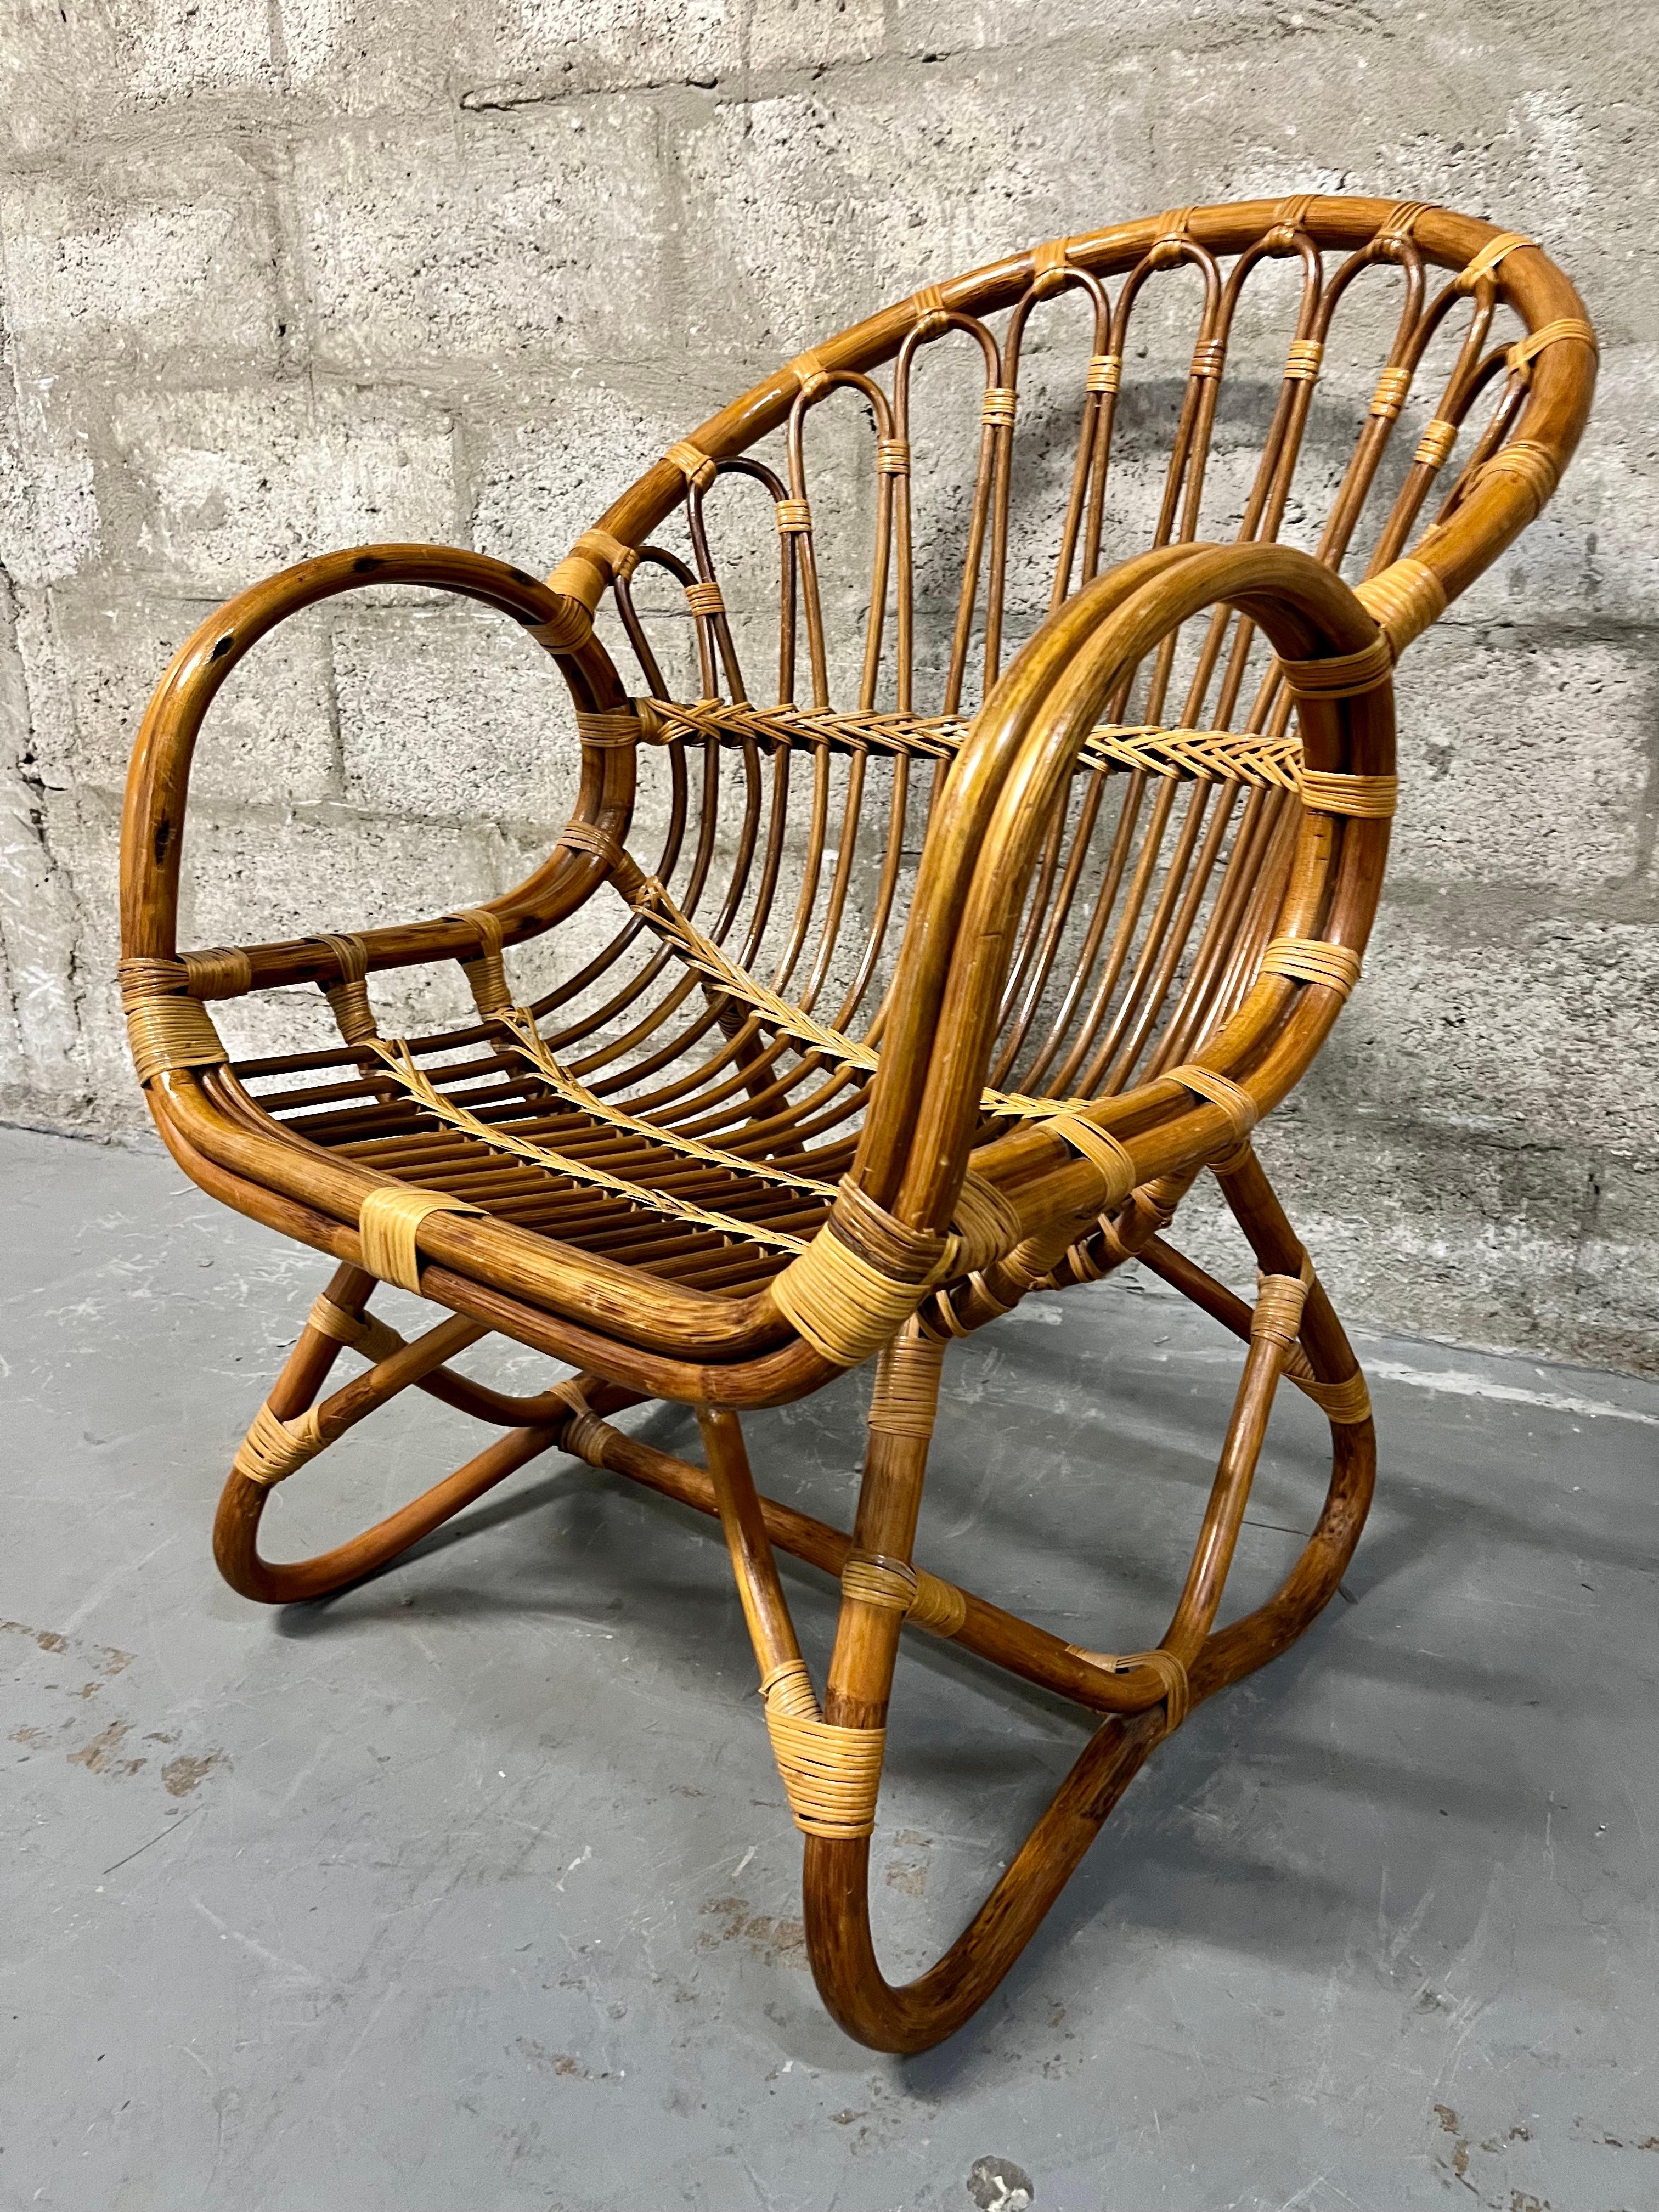 Mid Century Modern / Boho Chic Style Rattan Lounge Chair in der Franco Albini Manier. Circa 1960er Jahre
Er zeichnet sich durch ein raffiniertes Design mit abgerundeten Armlehnen, Rückenlehnen und Beinen sowie durch aufwendige Flechtdetails aus. 
In